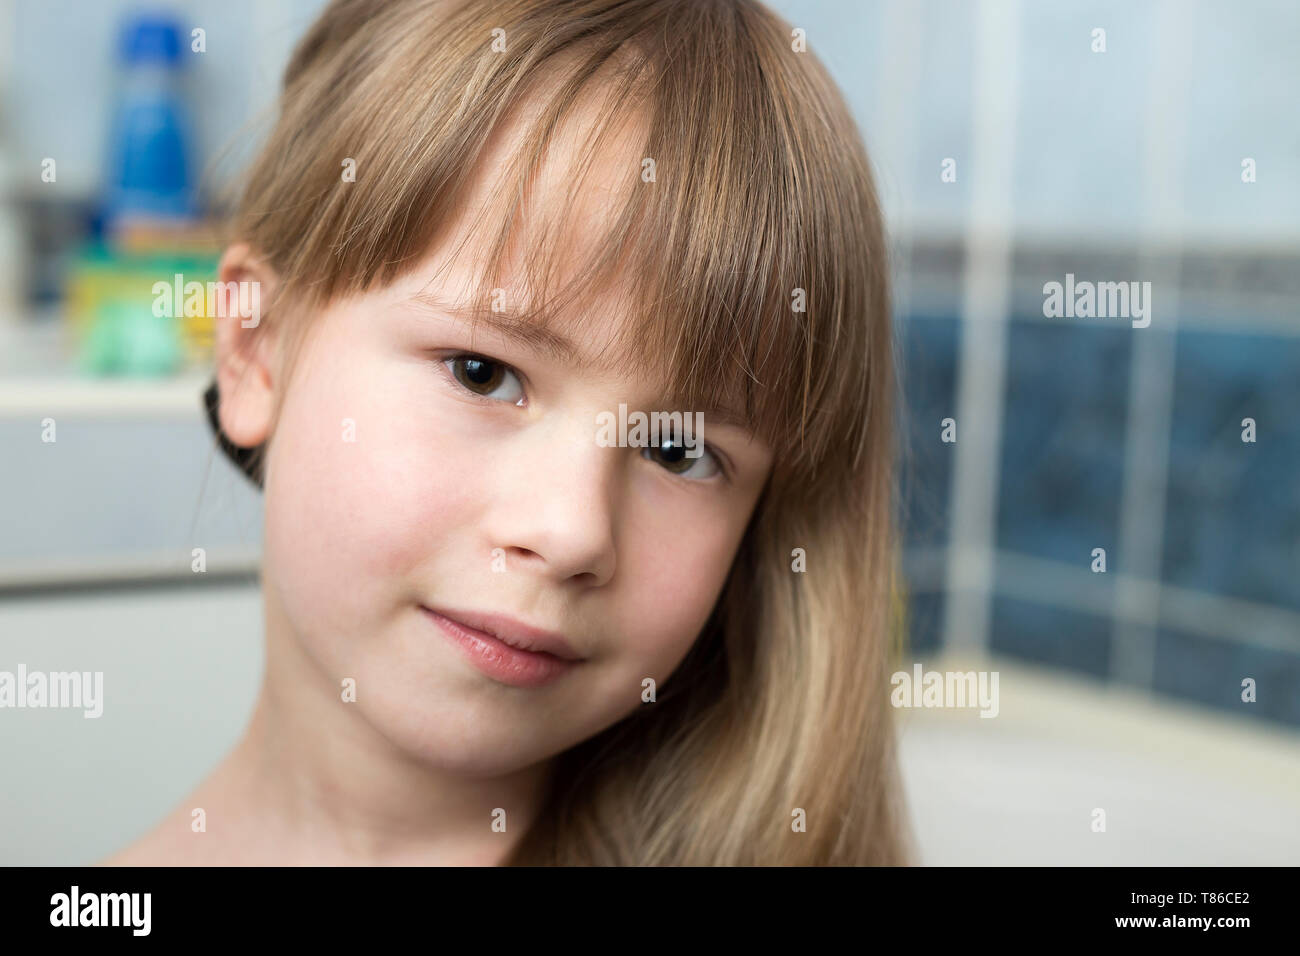 Hubsches Madchen Gesicht Portrait Kind Mit Schonen Augen Und Lange Blonde Haare Nass Auf Unscharfen Hintergrund Von Bad Stockfotografie Alamy